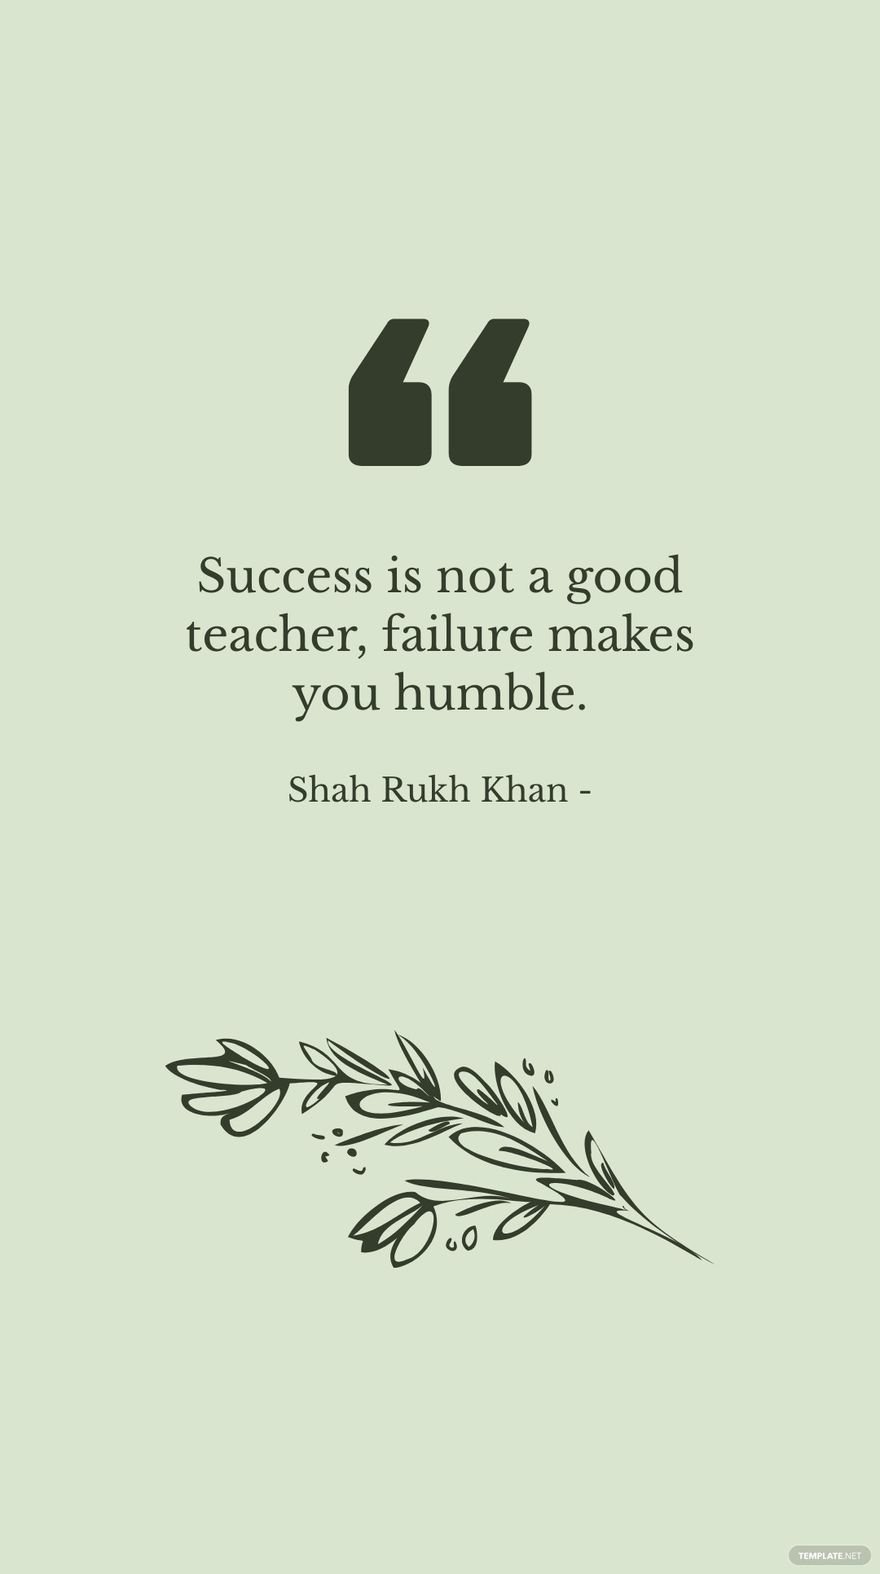 Shah Rukh Khan - Success is not a good teacher, failure makes you humble.